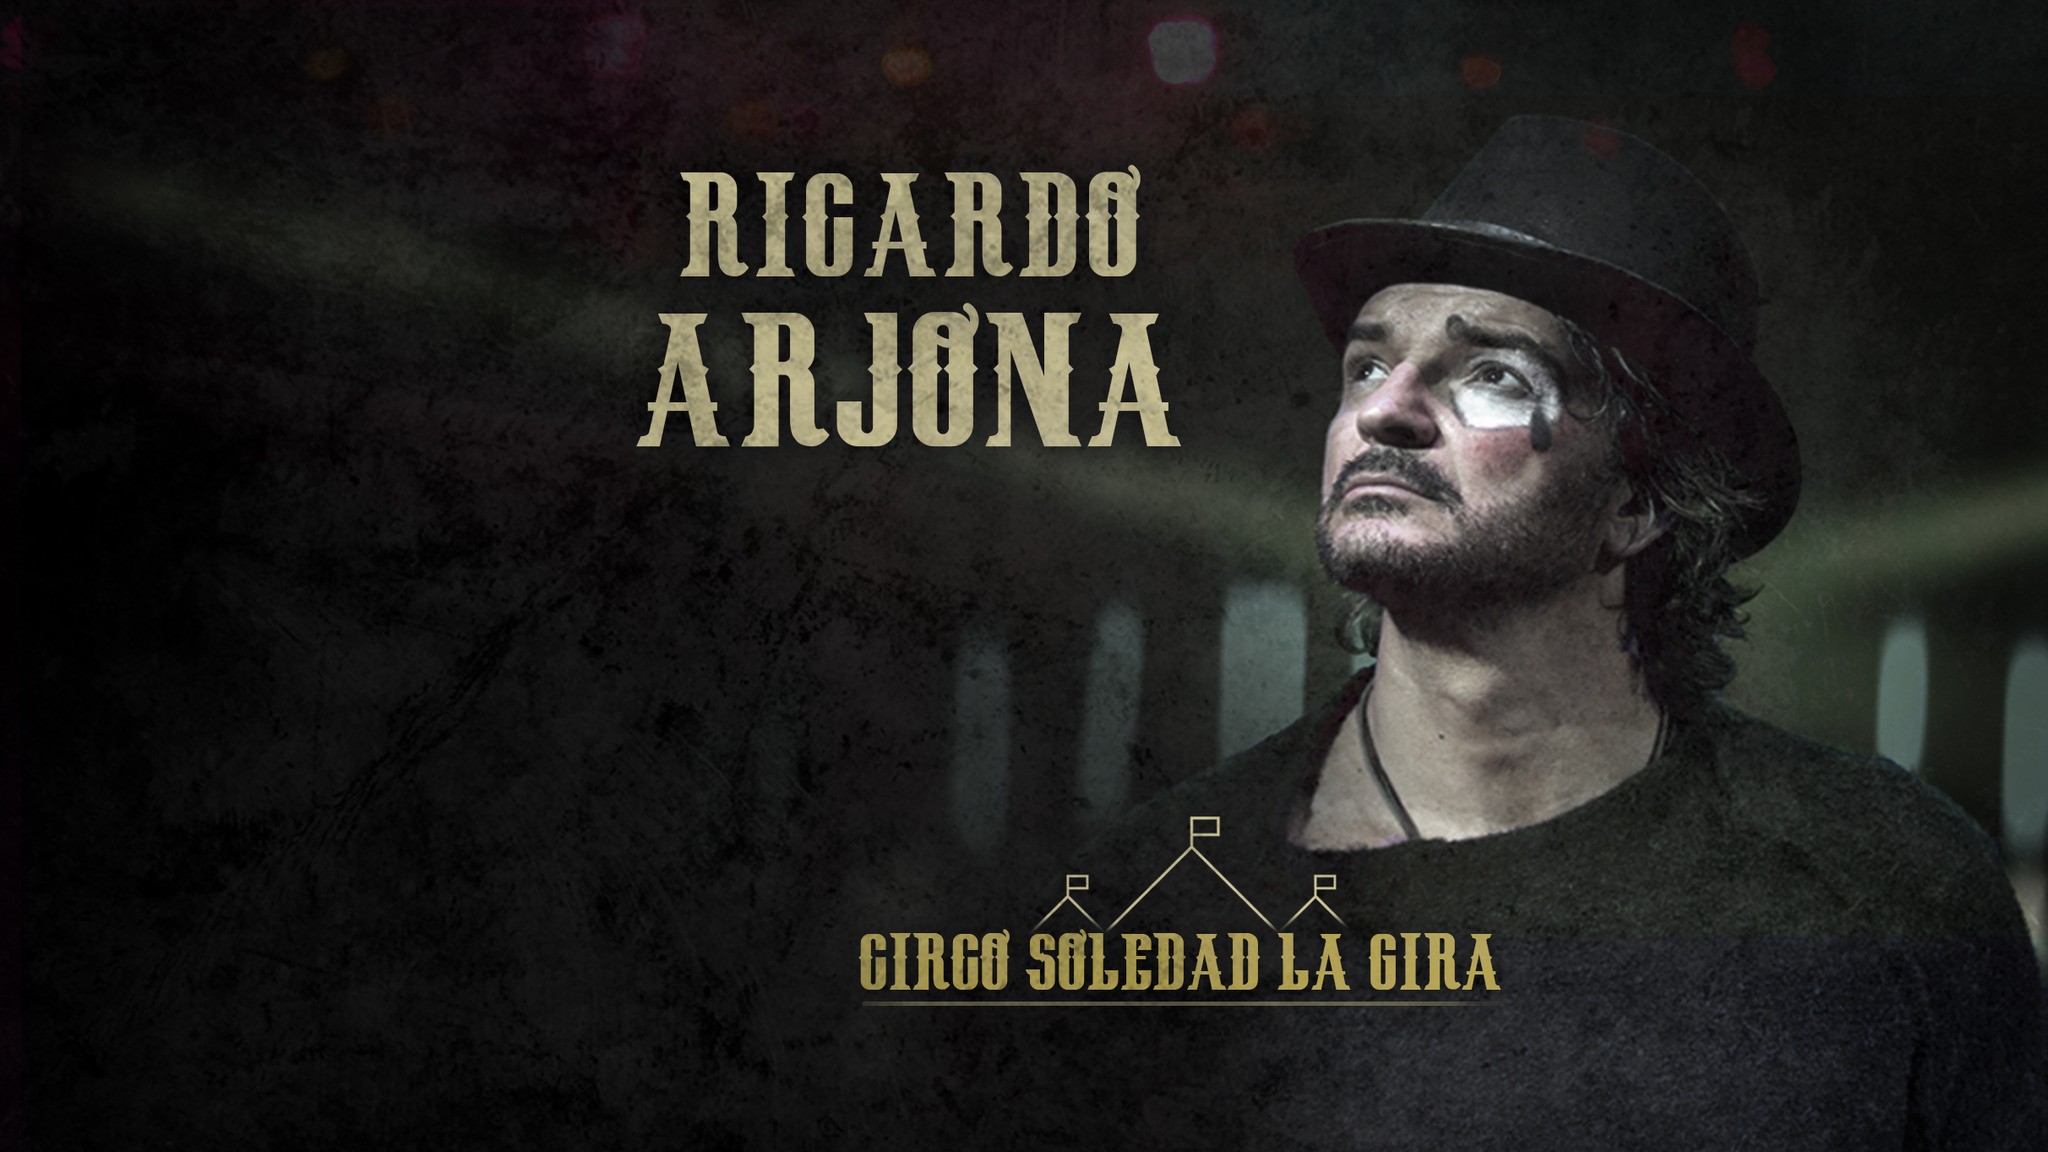 Ricardo Arjona in concerto a Milano il 5 maggio 2018 al Teatro Ciak, info biglietti e prezzi Latino de Italia en español para los Latinos en Italia